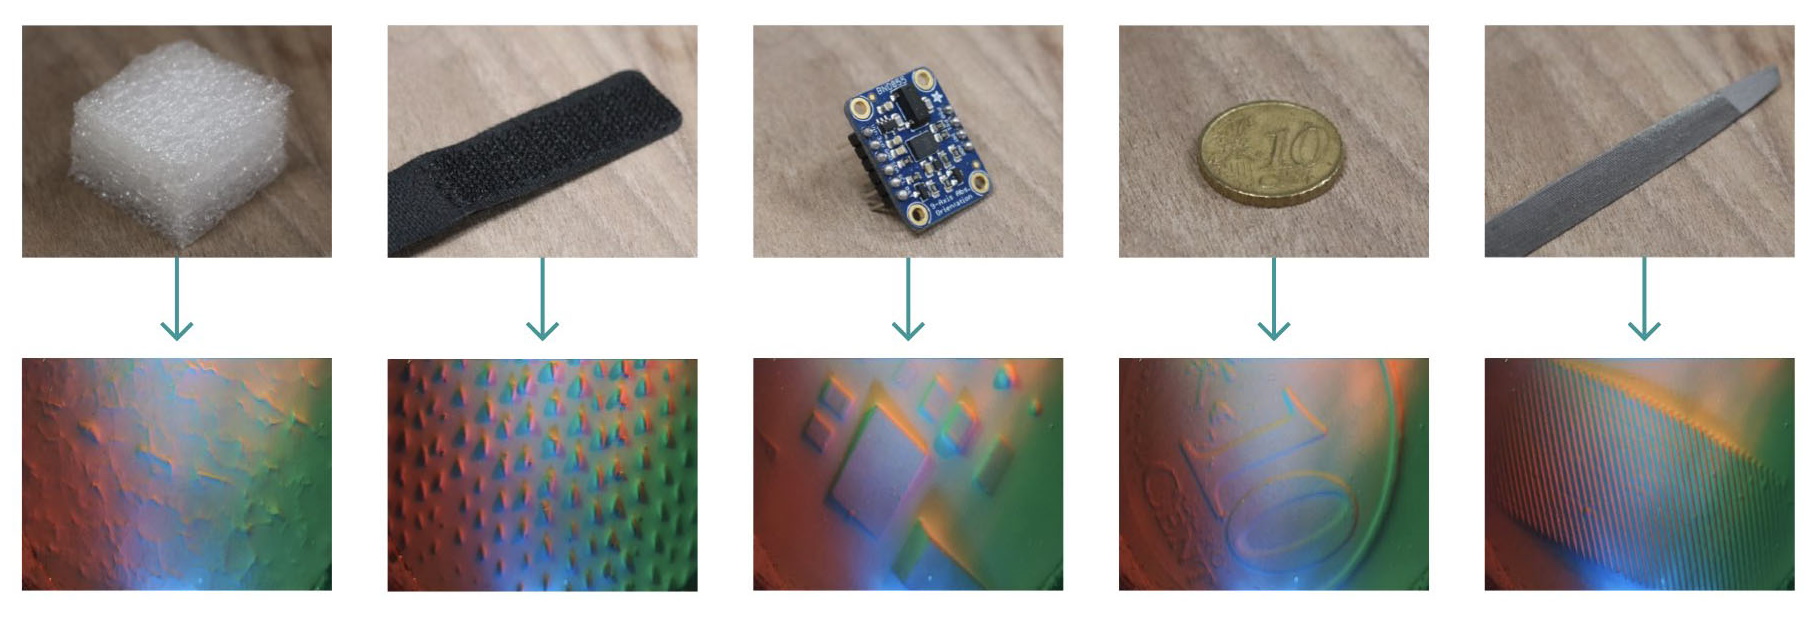 اشیایی که در بالا تصاویر سیگنال های تولید شده توسط نوک انگشت رباتیک نشان داده شده اند.